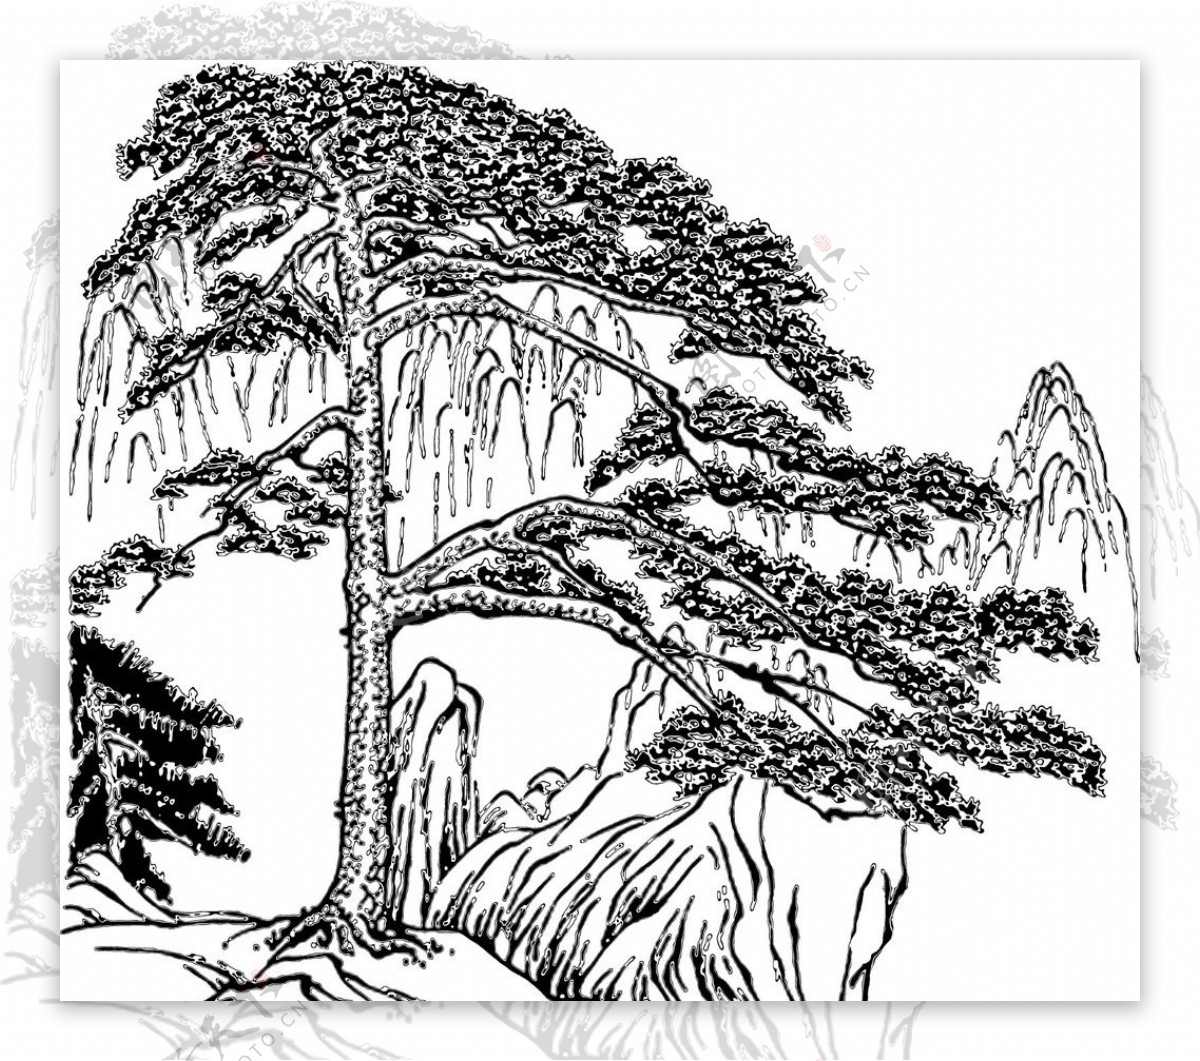 最美古树名木：轩辕黄帝手植柏-智慧林业网 | 关注智慧林业发展与创新